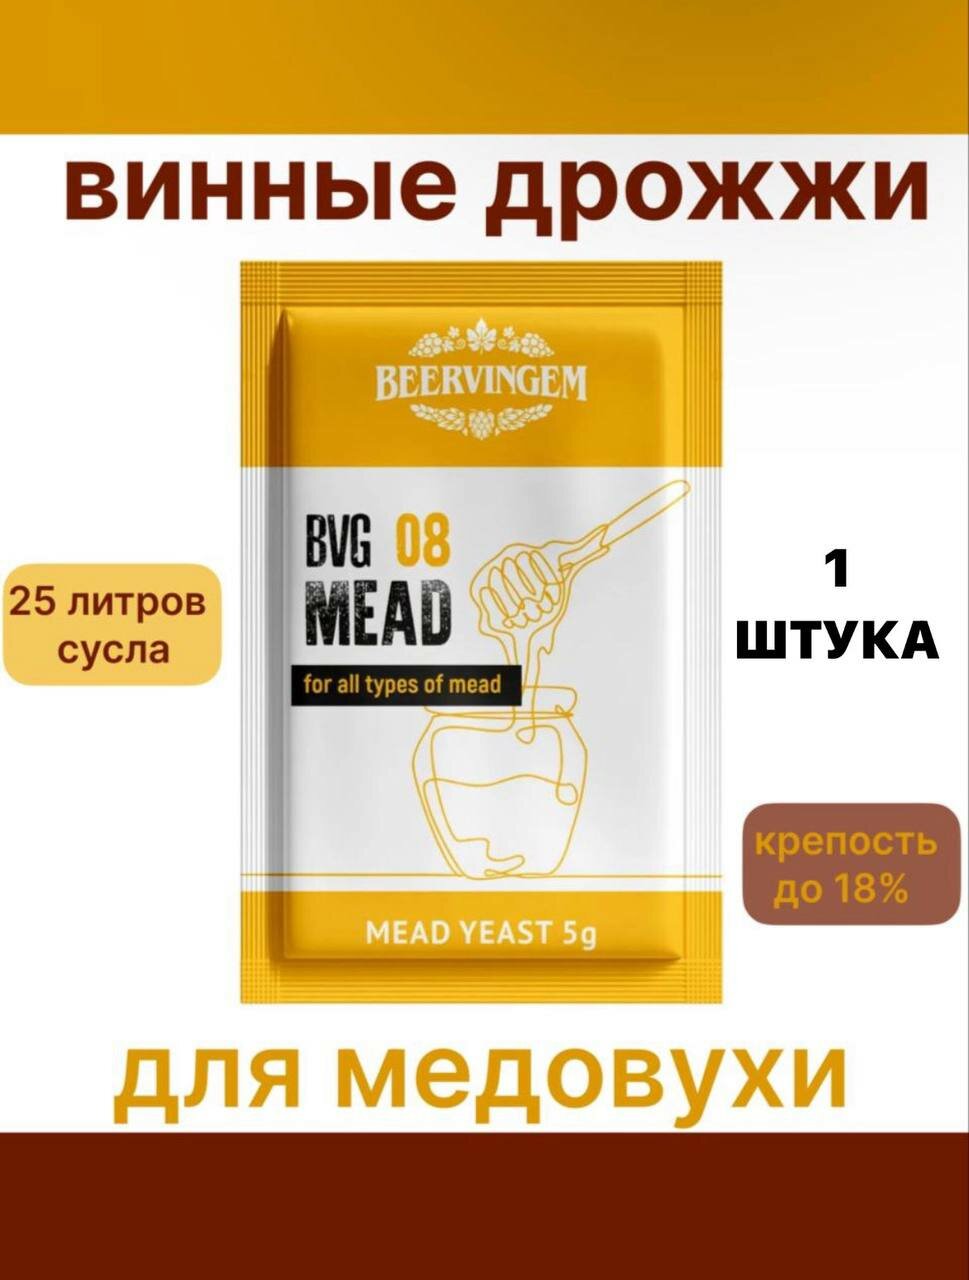 Винные дрожжи Beervingem для медовухи "Mead BVG-08"-1 шт